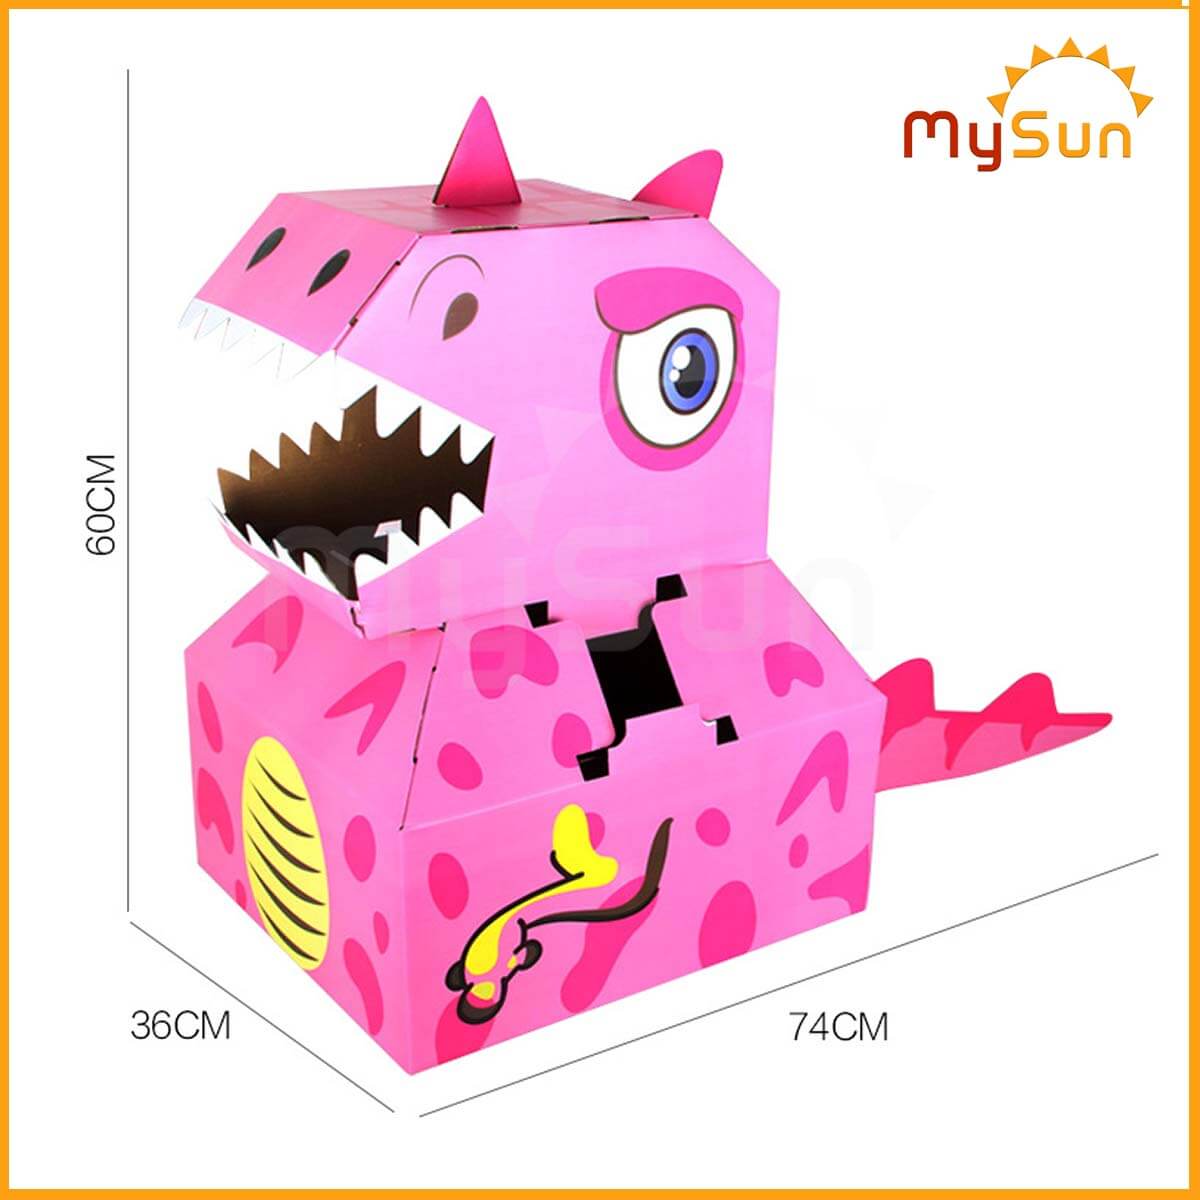 Đồ chơi lắp ráp, ghép khủng long cho bé hóa trang bằng bìa carton MySun